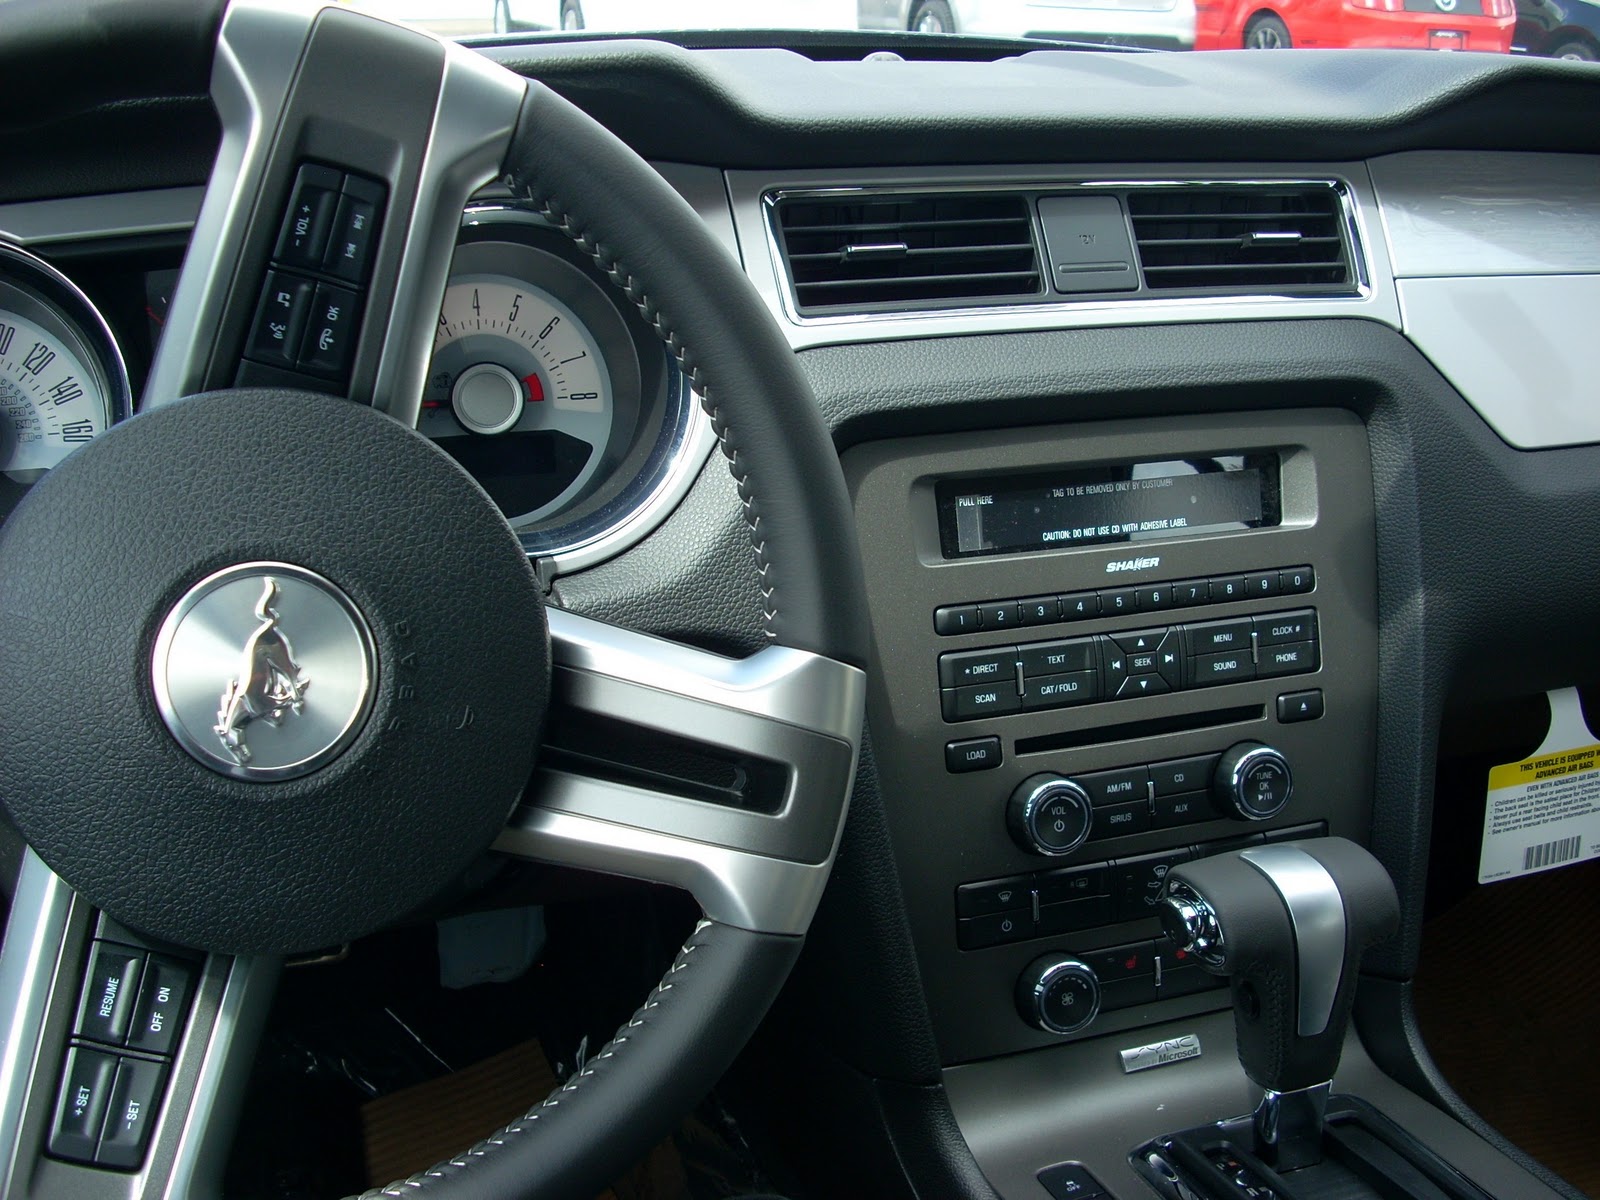 2012 Mustang V6 Interior